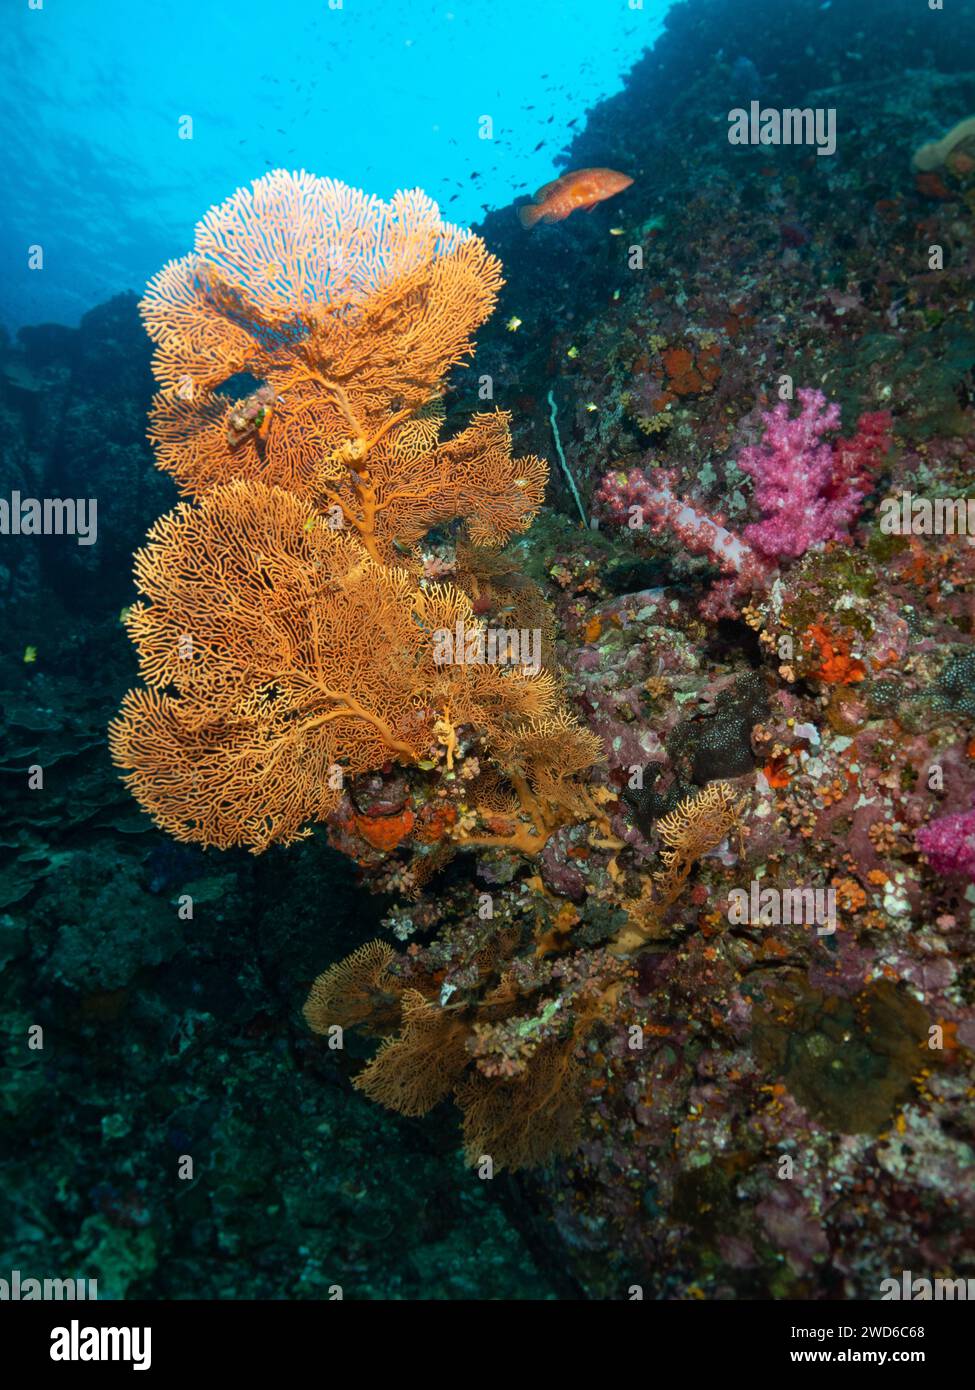 Riesen Gorgonisches Meer Fan Soft Coral. Verzweigte Gorgonia-Korallen. Wirbellose Meerestiere Alcyonacea, Cnidaria Octocorals. Coral Reef Life Undersea. Stockfoto